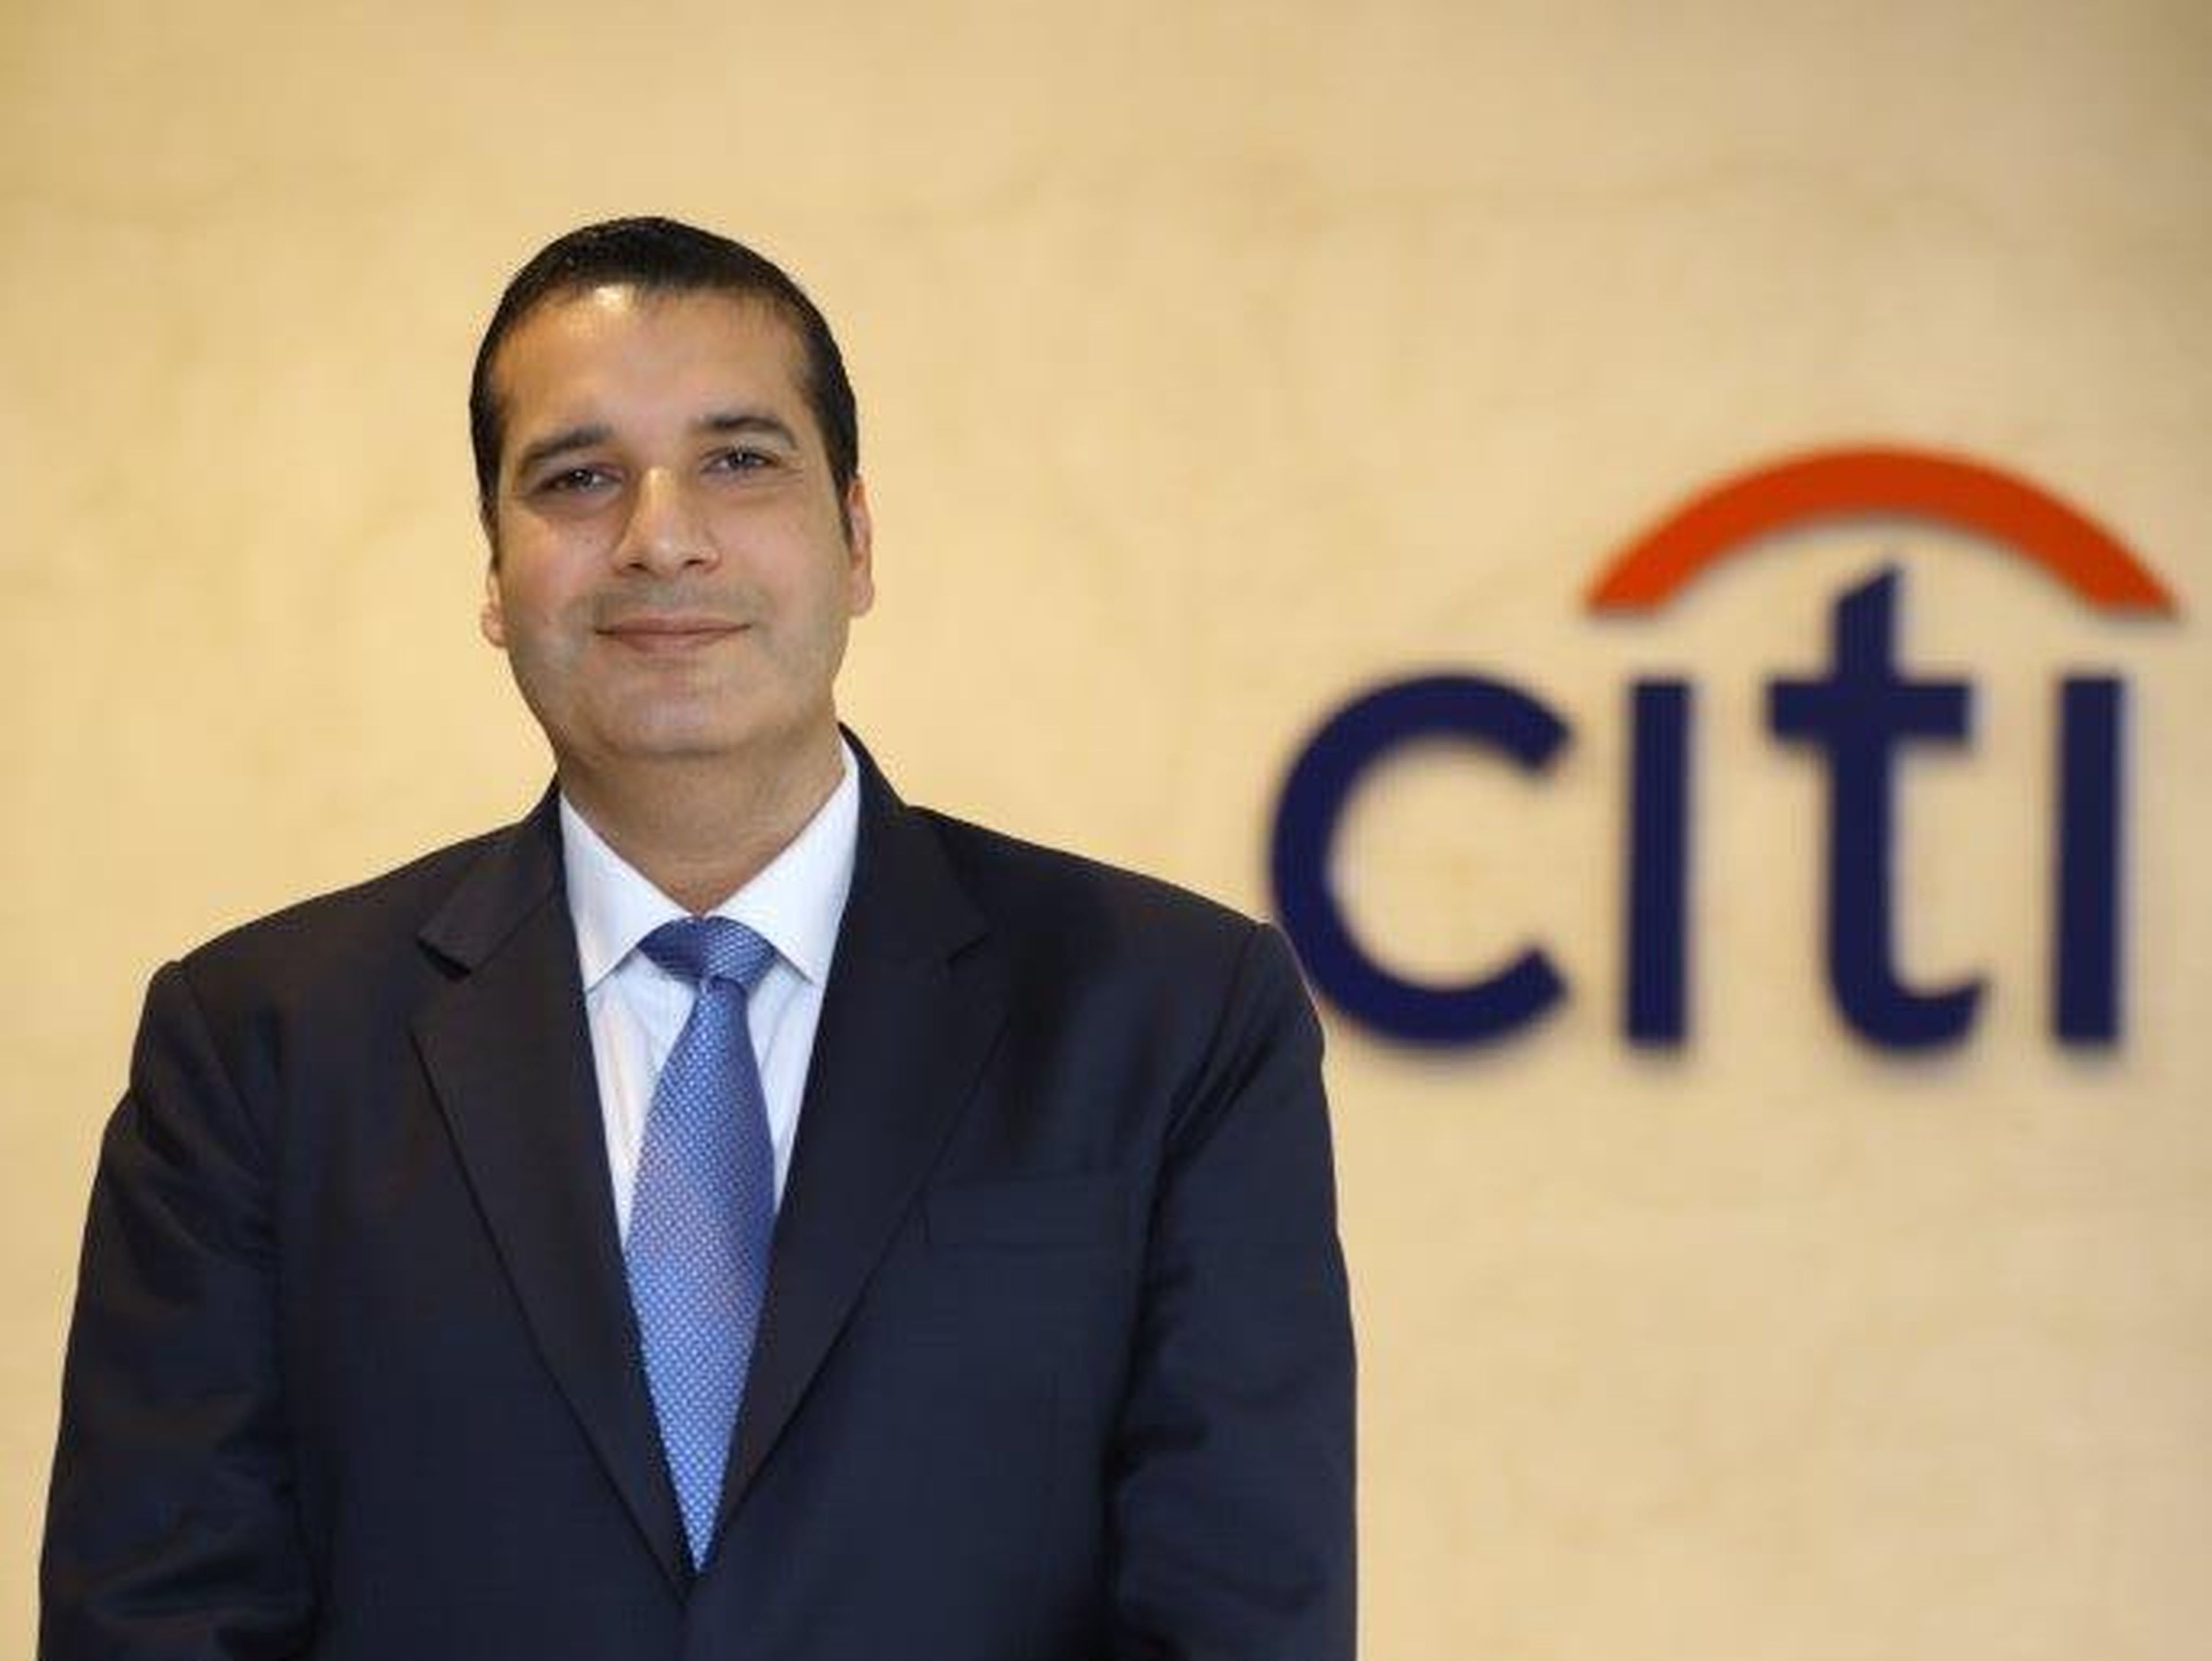 Manish Kohli, jefe global de pagos y gestión de cobros de Citigroup, está incrementando el enorme negocio de pagos del banco a través de la tecnología.